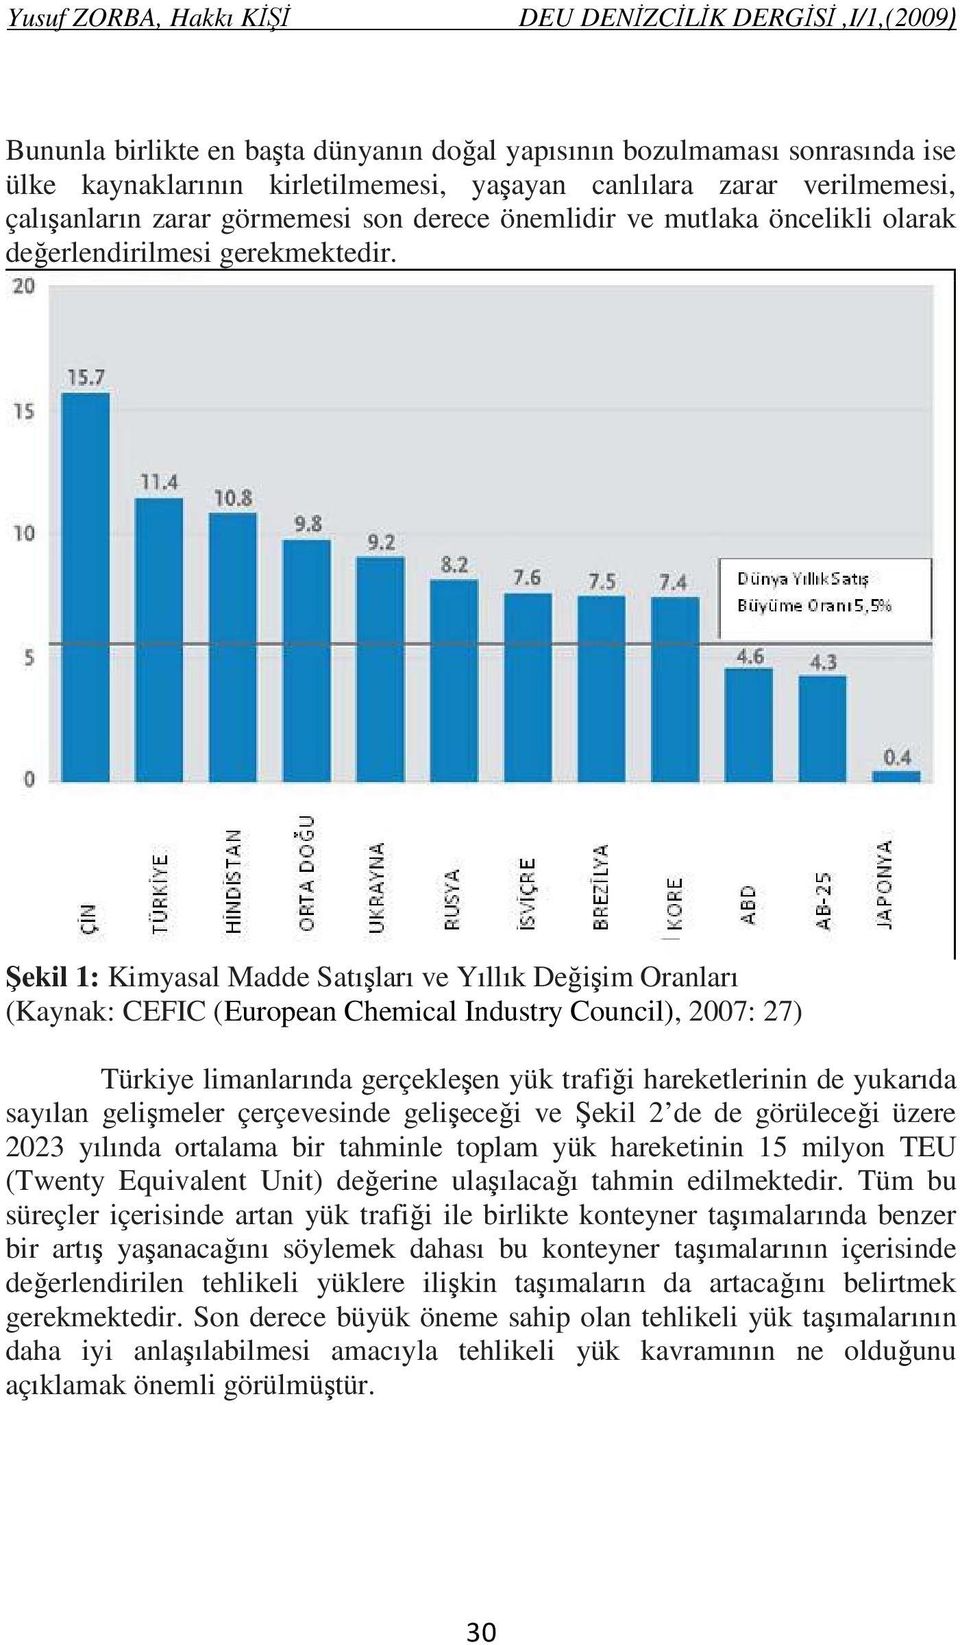 Şekil 1: Kimyasal Madde Satışları ve Yıllık Değişim Oranları (Kaynak: CEFIC (European Chemical Industry Council), 2007: 27) Türkiye limanlarında gerçekleşen yük trafiği hareketlerinin de yukarıda